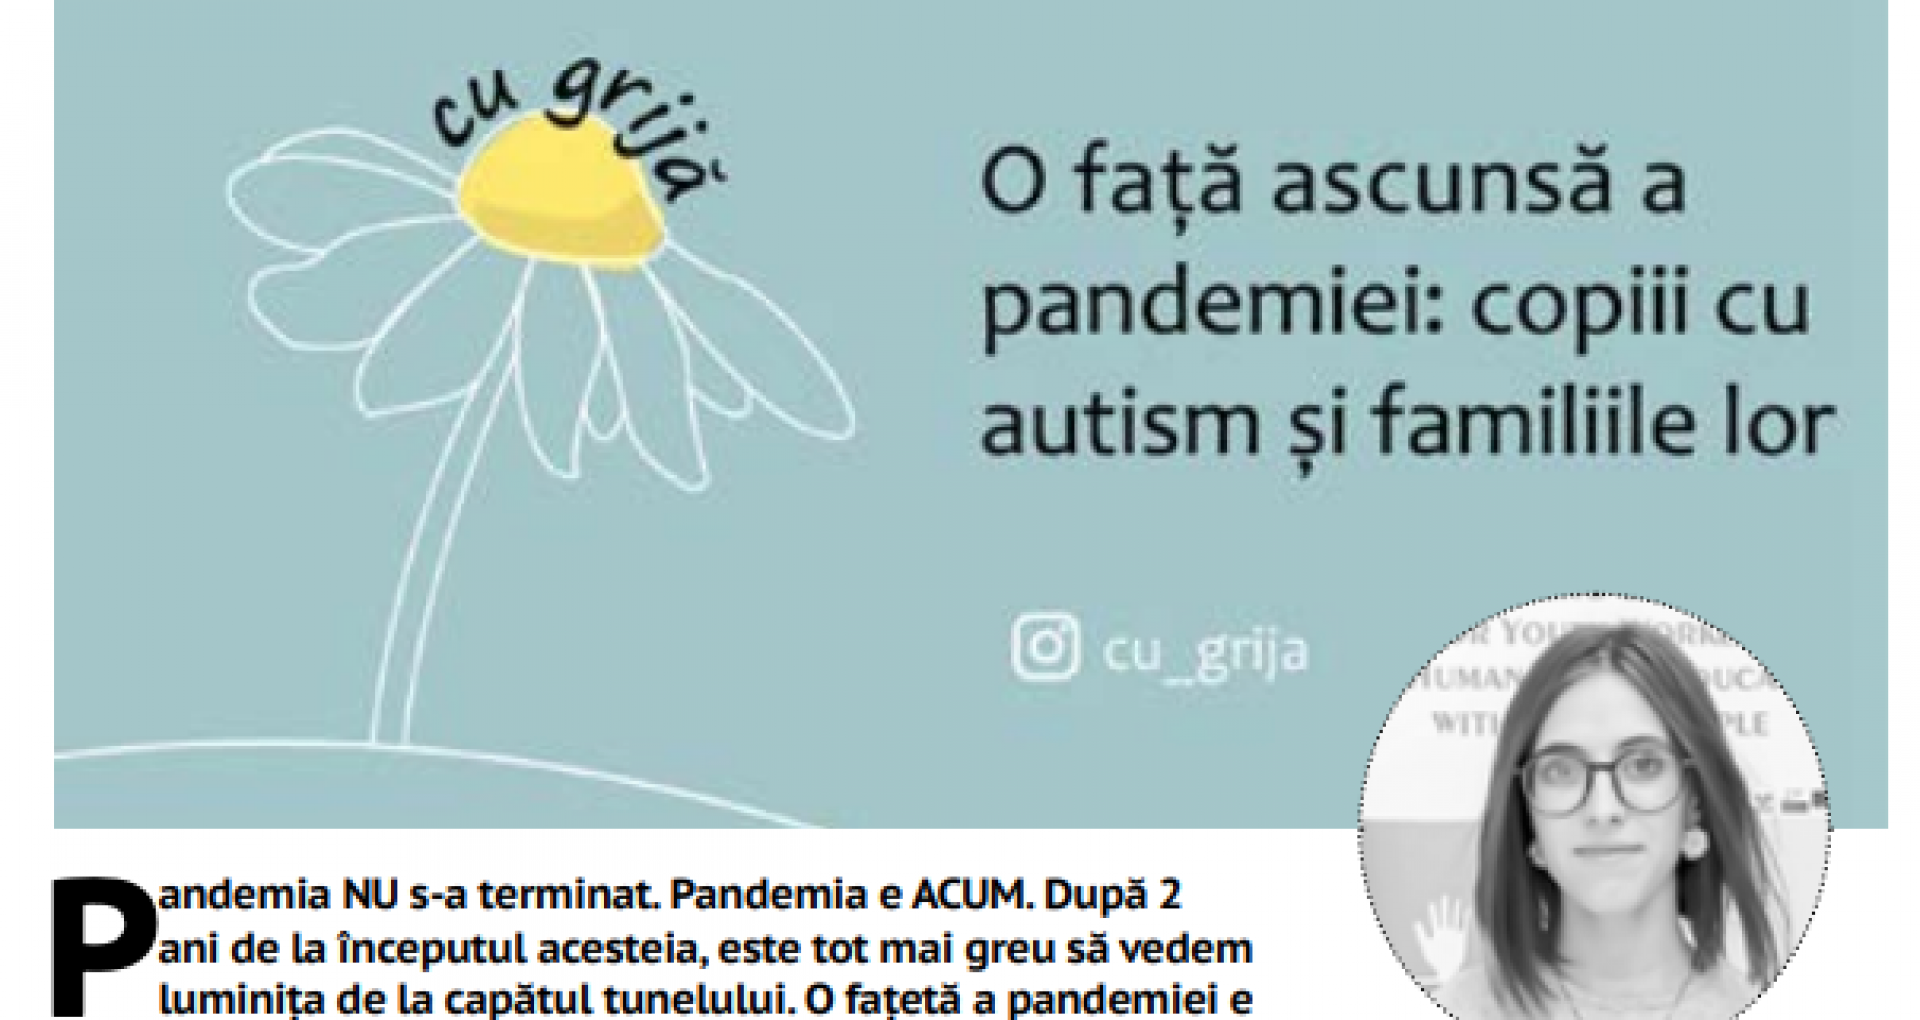 O față nevăzută a pandemiei: copiii cu autism și familiile lor